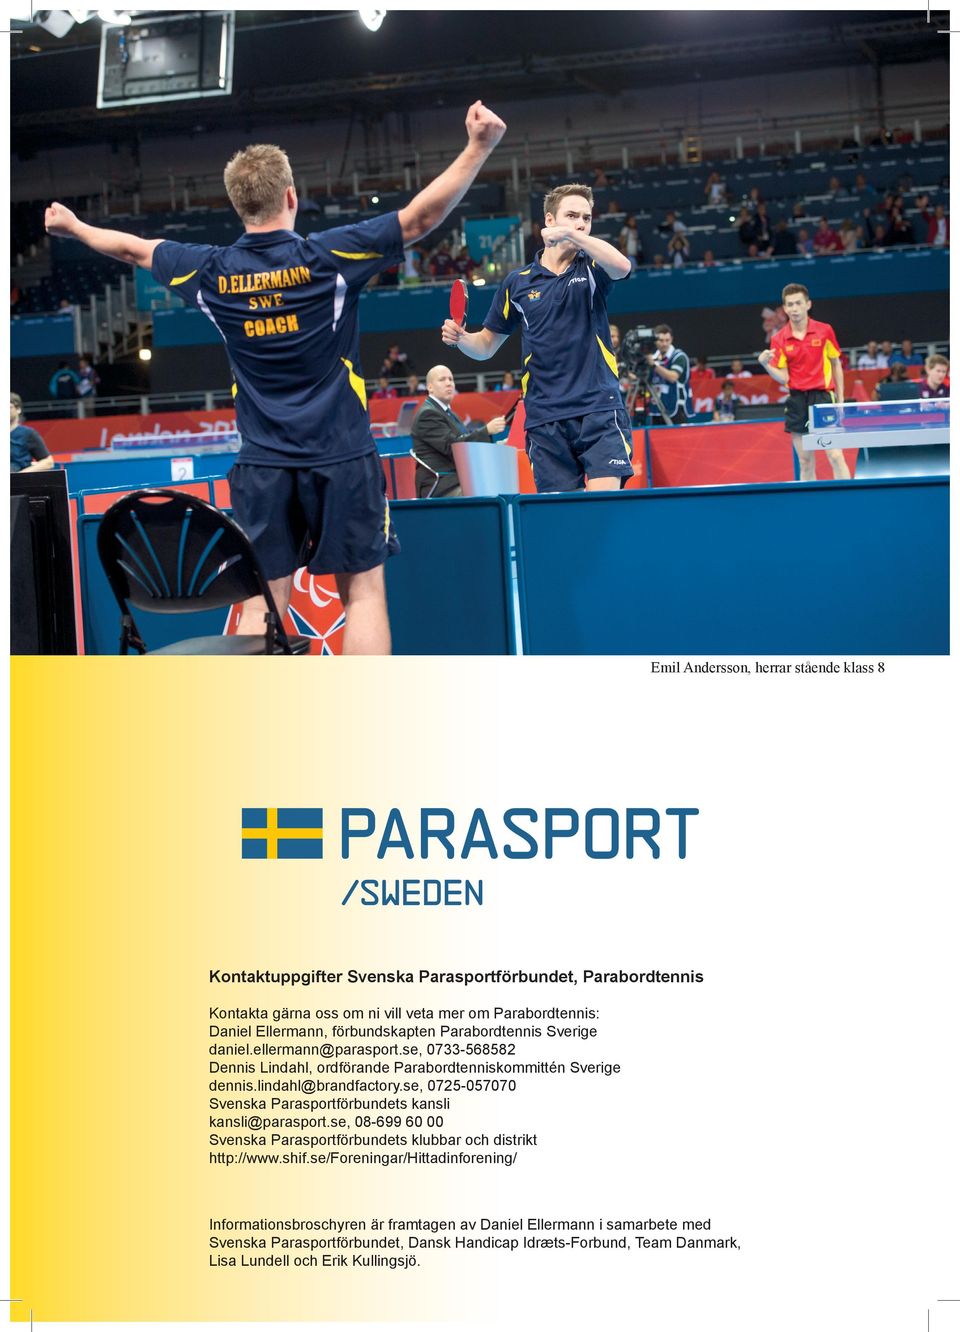 se, 0725-057070 Svenska Parasportförbundets kansli kansli@parasport.se, 08-699 60 00 Svenska Parasportförbundets klubbar och distrikt http://www.shif.